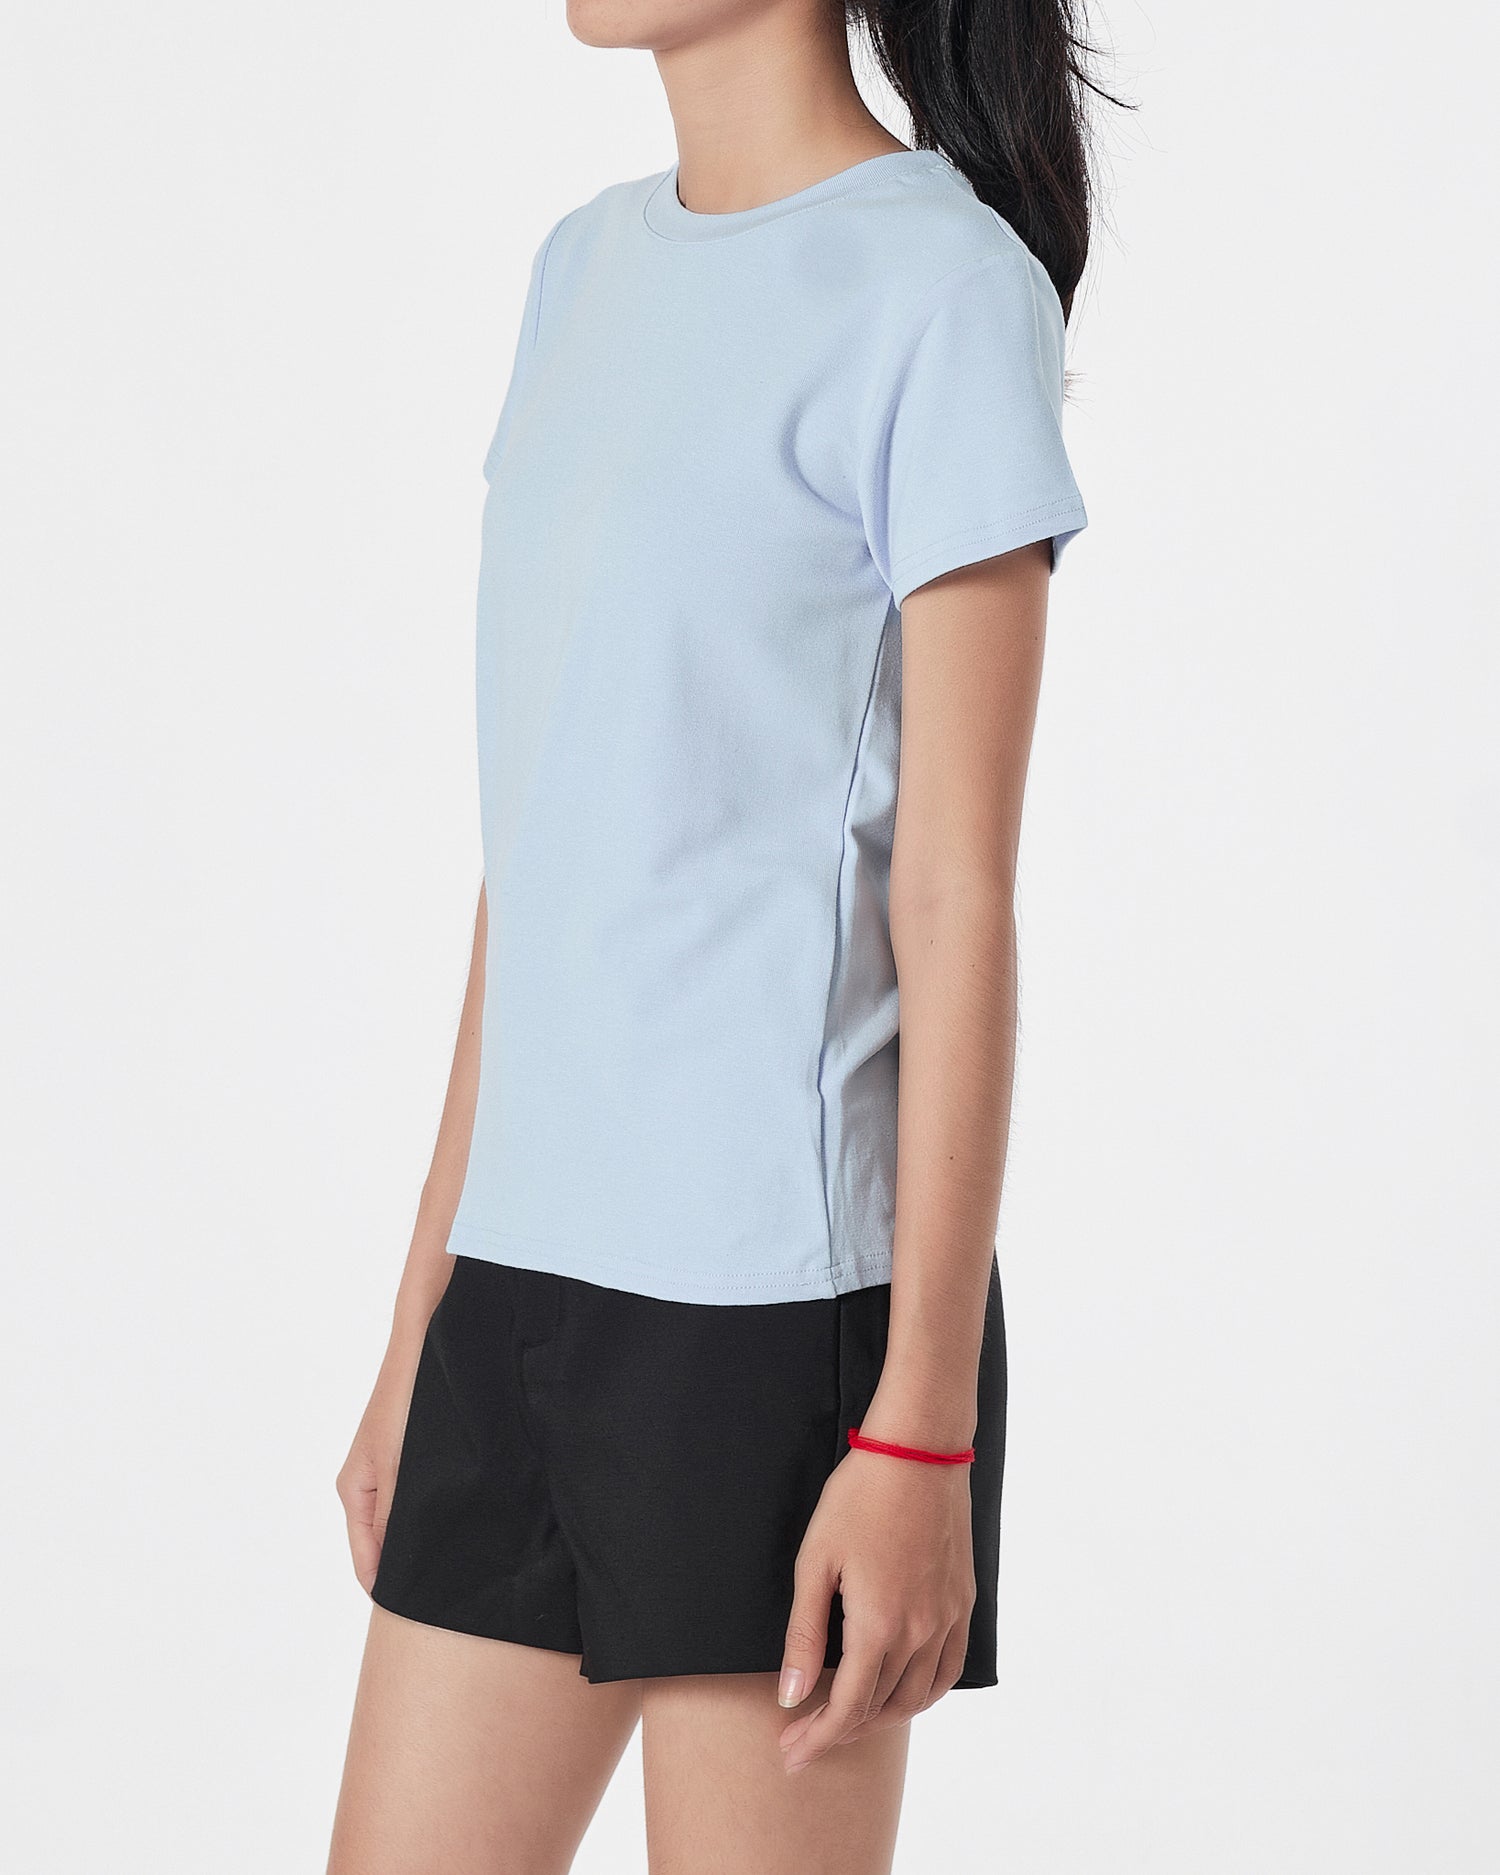 Plain Color Lady Blue T-Shirt 11.90